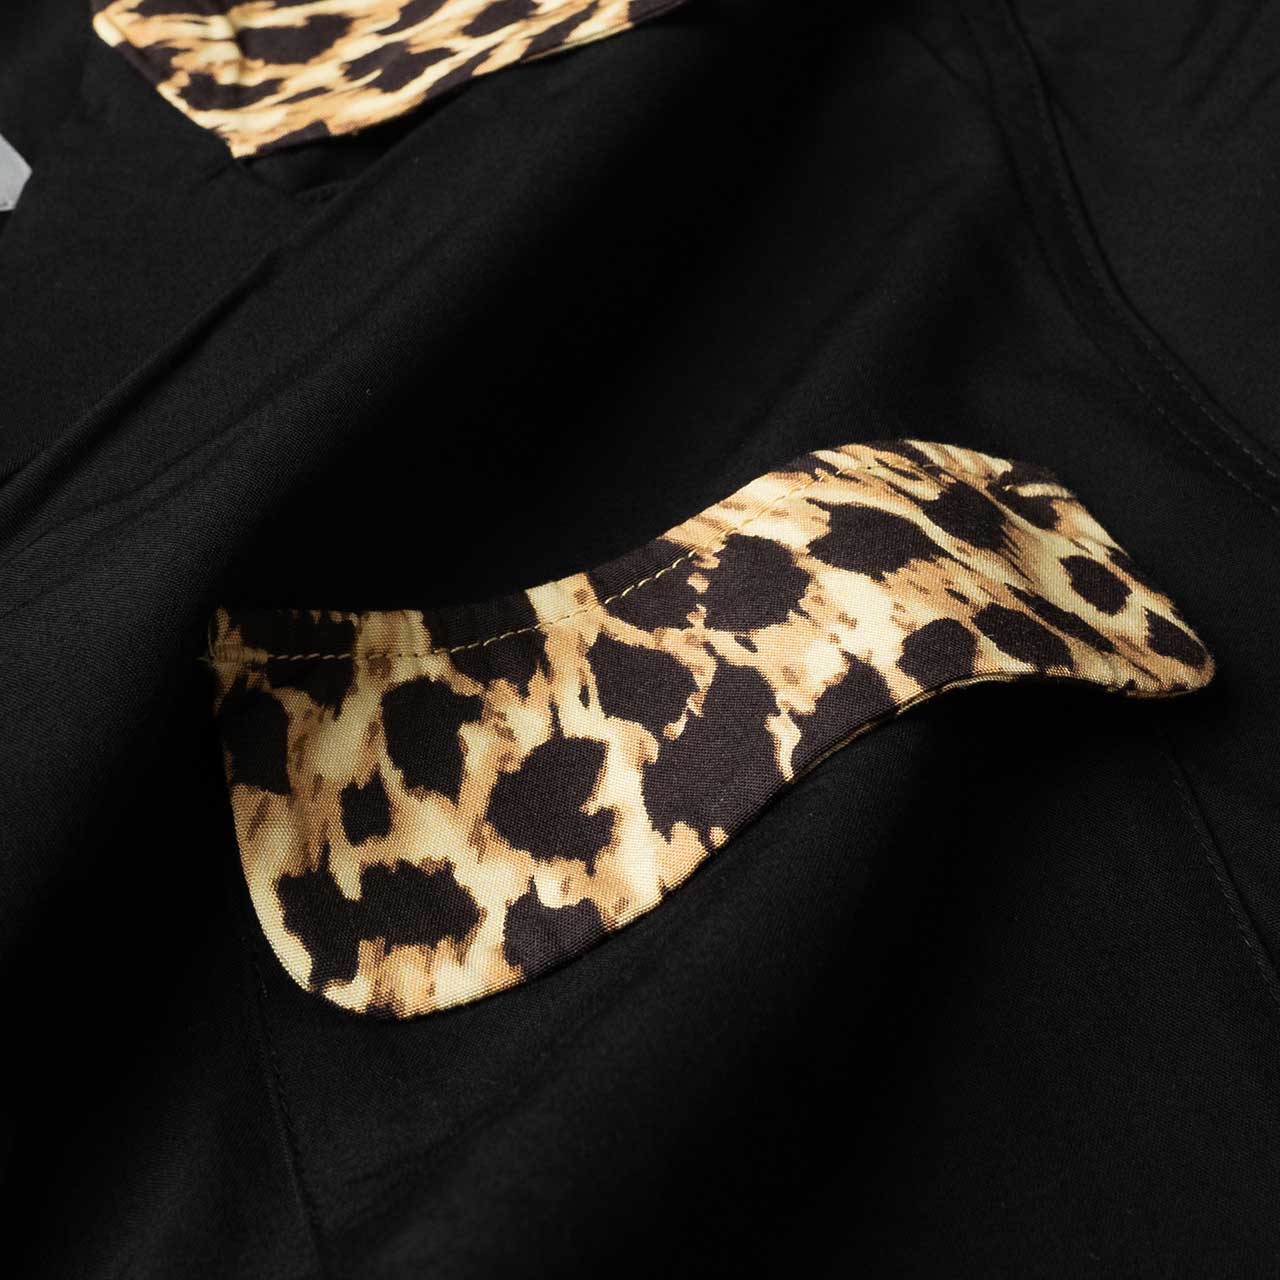 carhartt wip x wacko maria 50's shirt (black / leopard print)